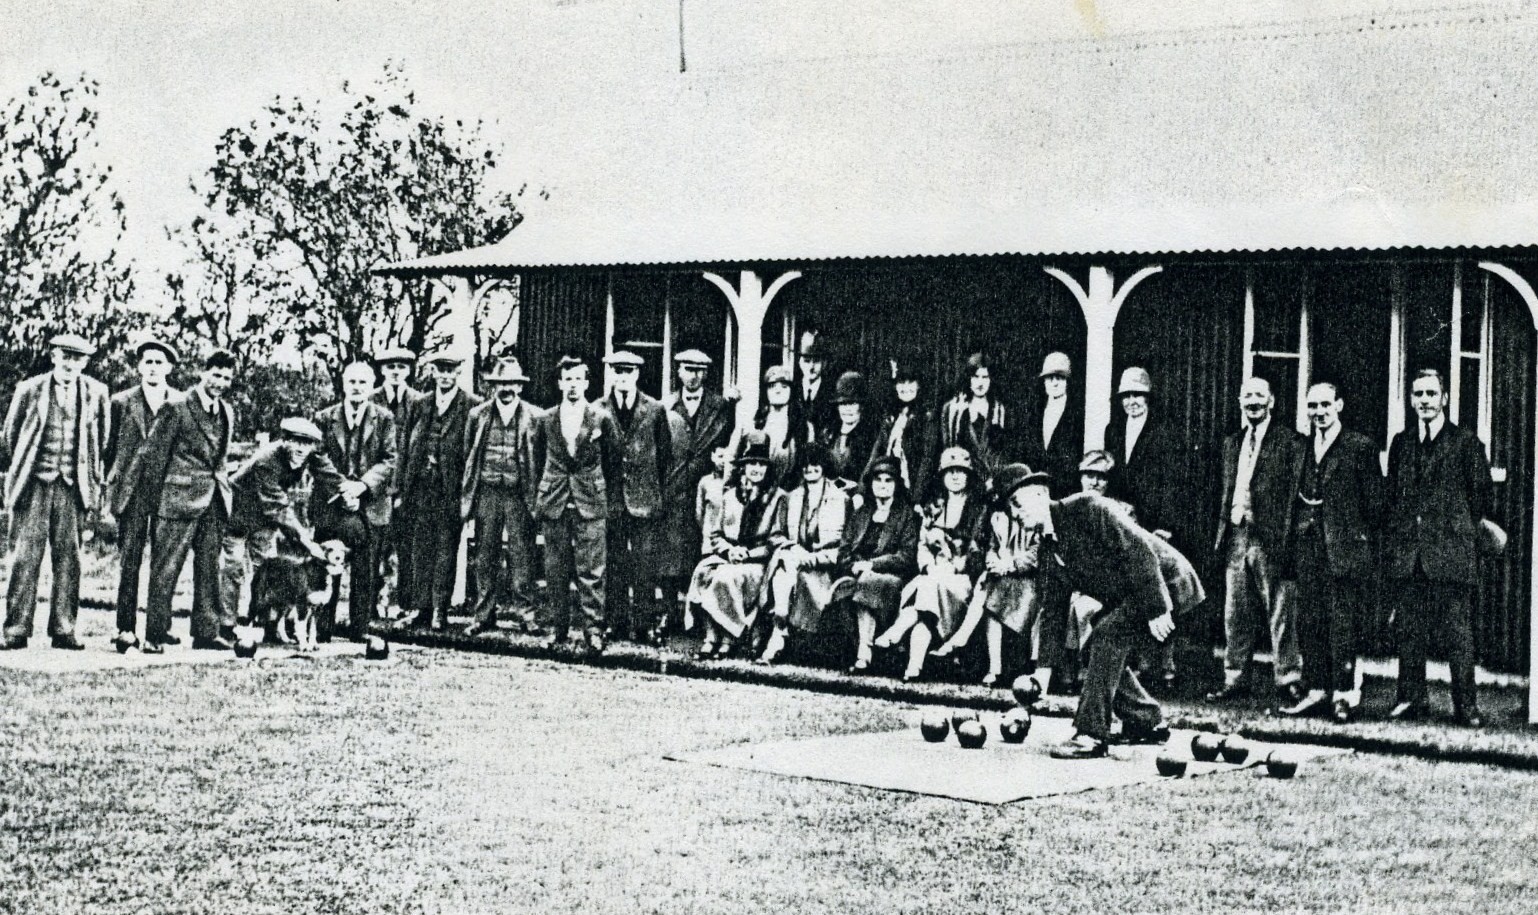 Bowling Club 1912